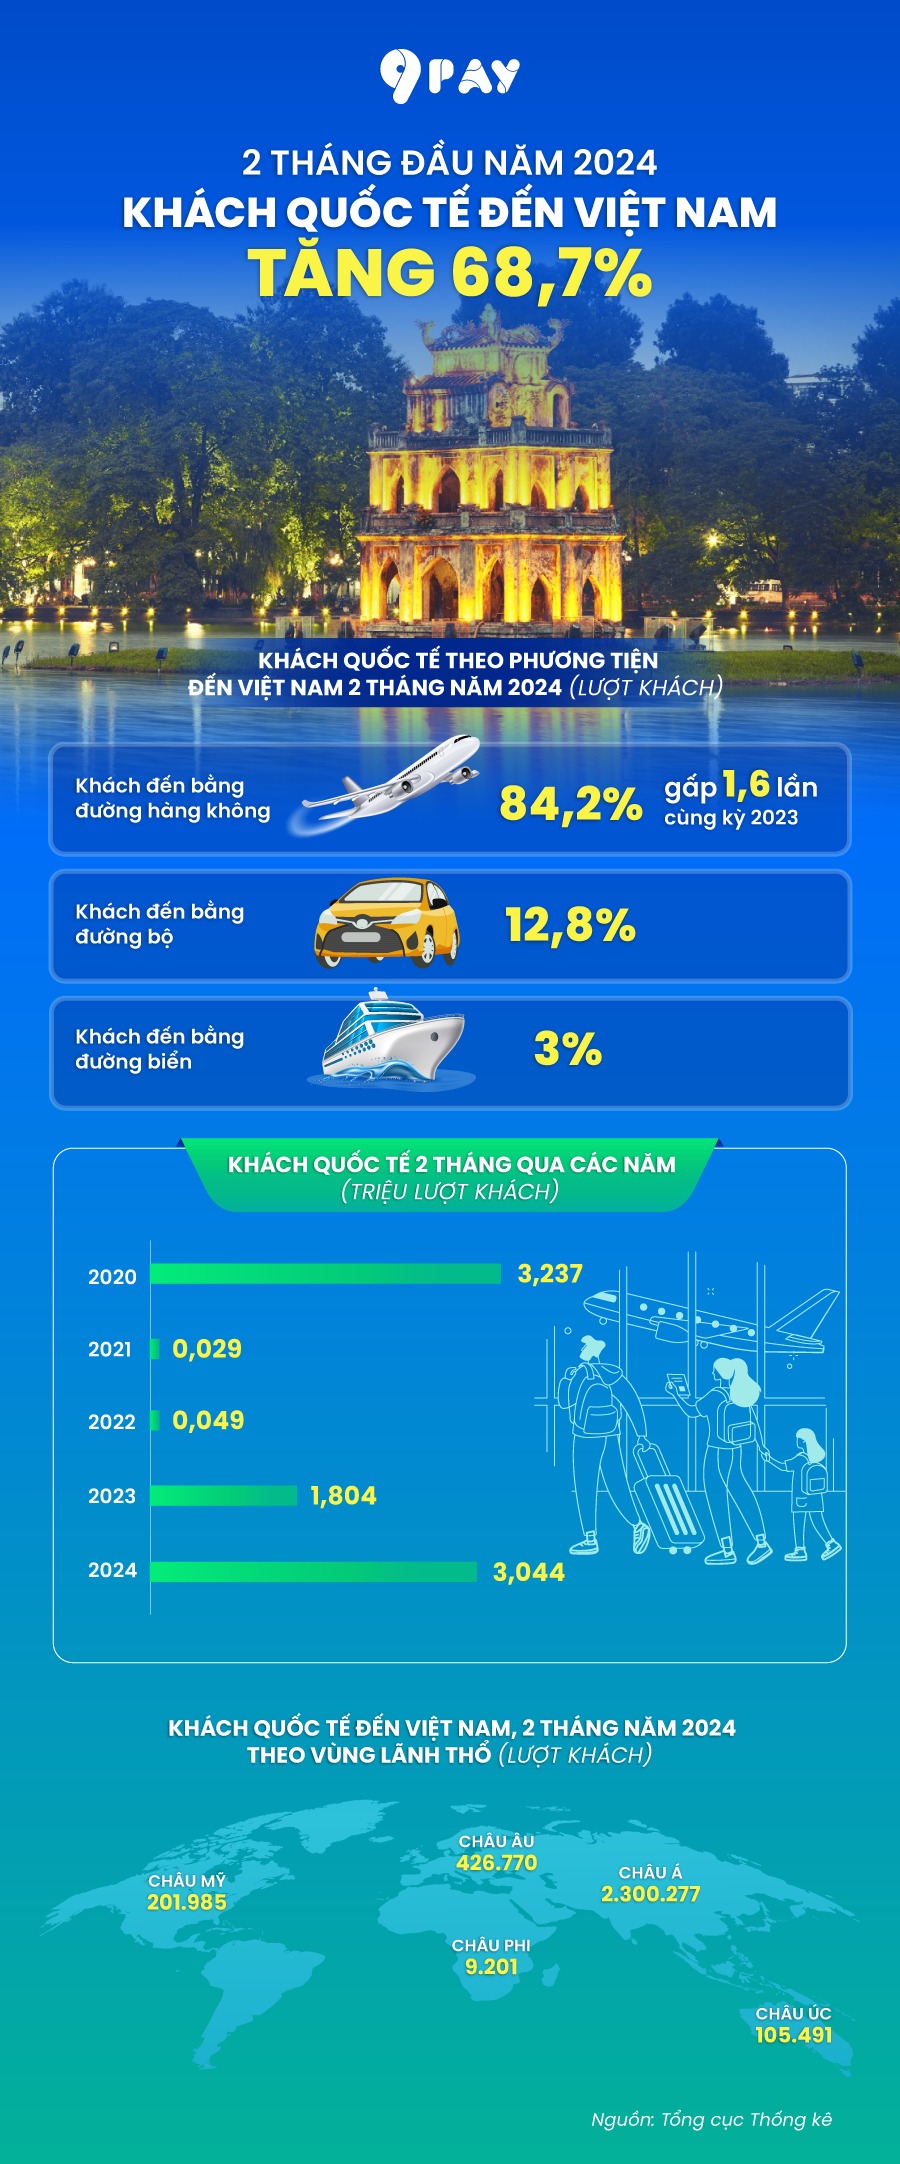 Khách quốc tế đến Việt Nam tăng 68,7% trong 2 tháng đầu năm 2024